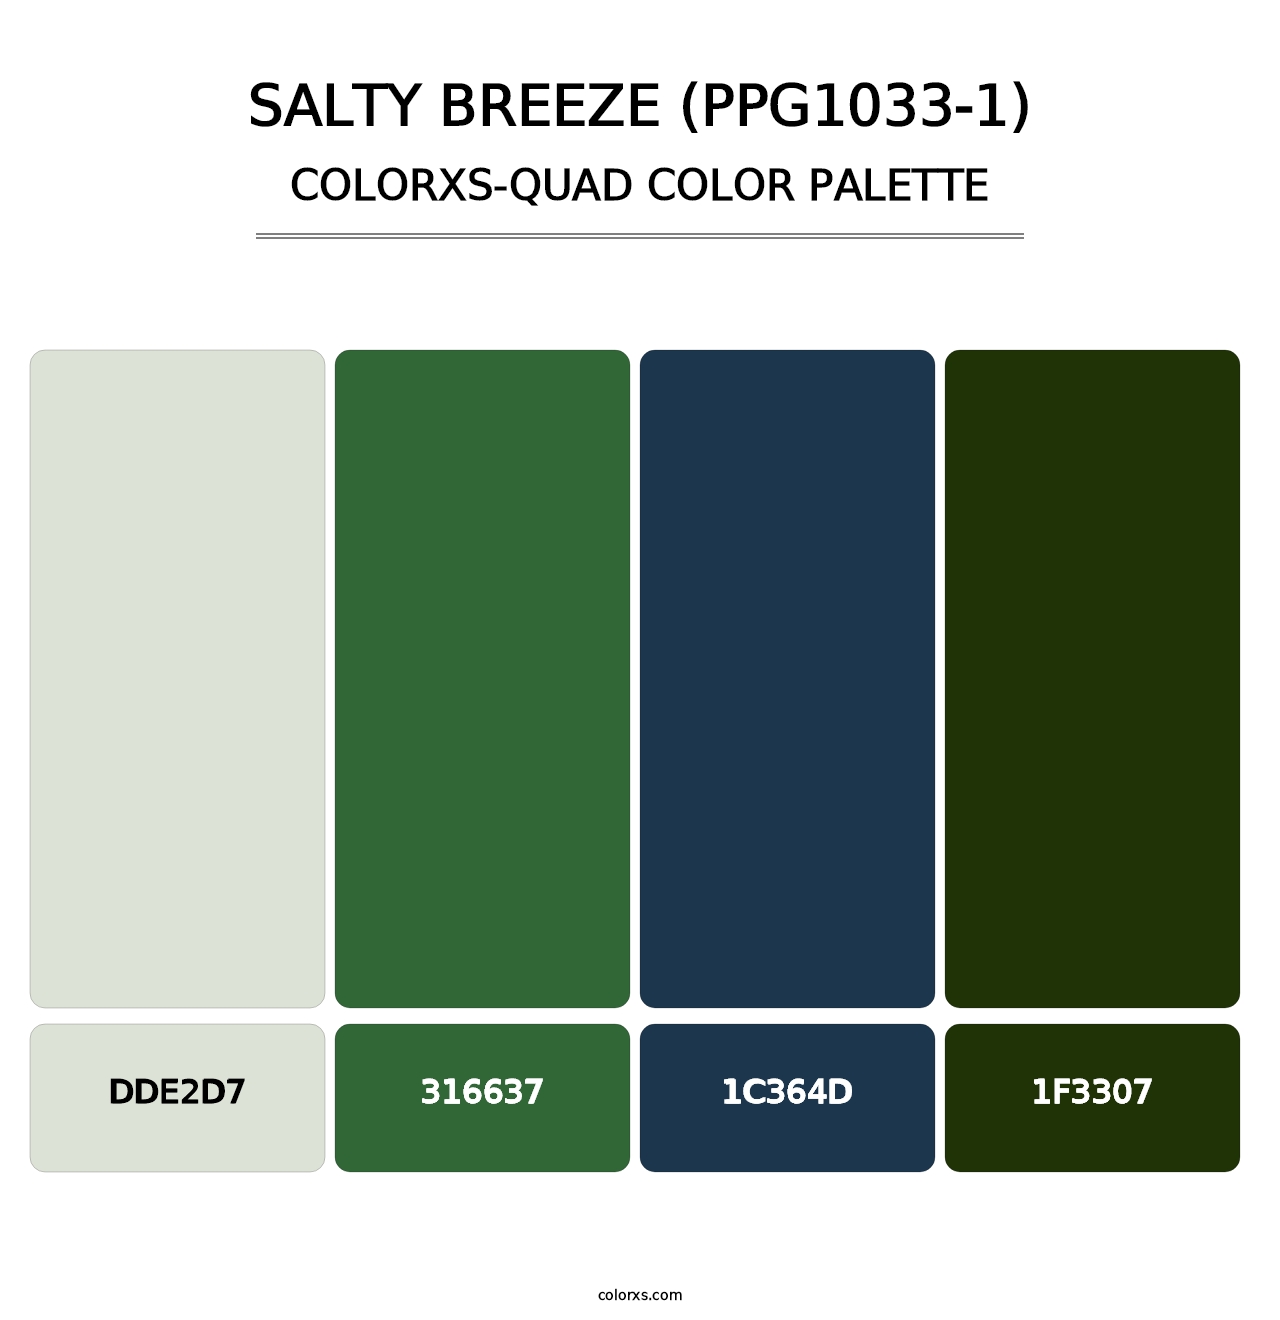 Salty Breeze (PPG1033-1) - Colorxs Quad Palette